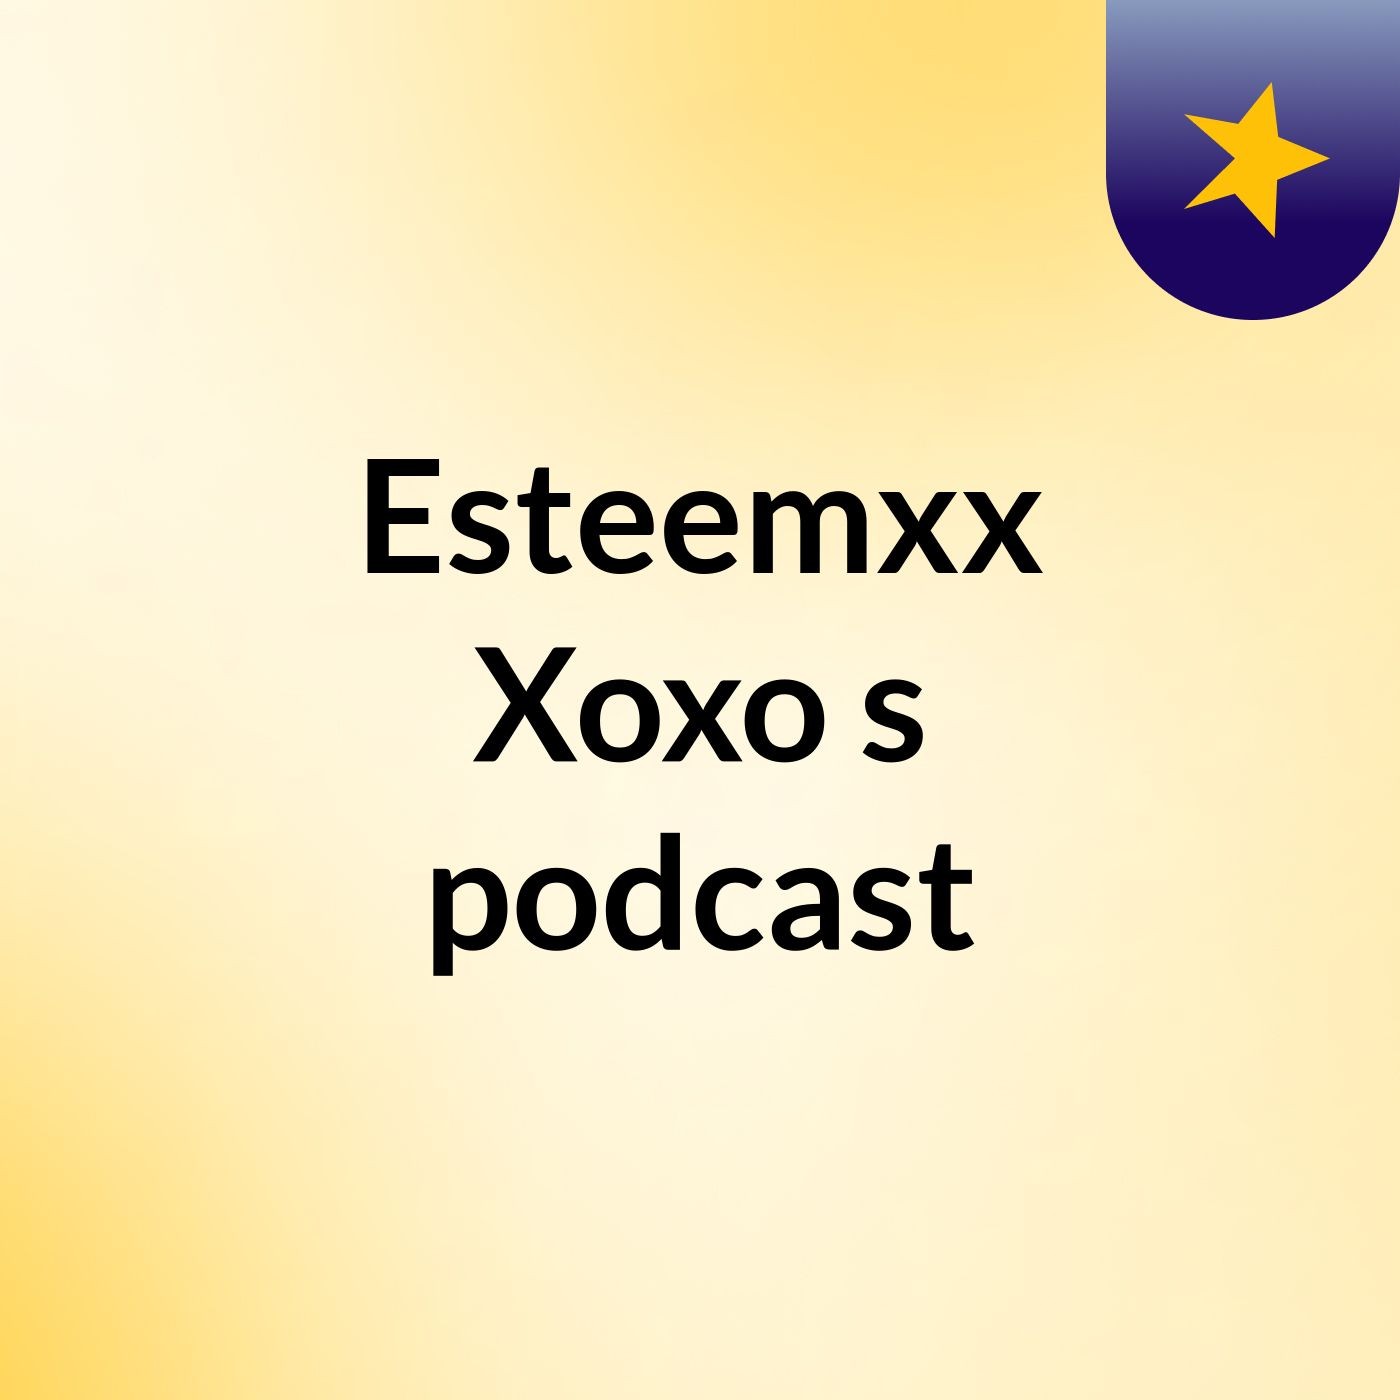 Episode 2 - Esteemxx Xoxo's podcast